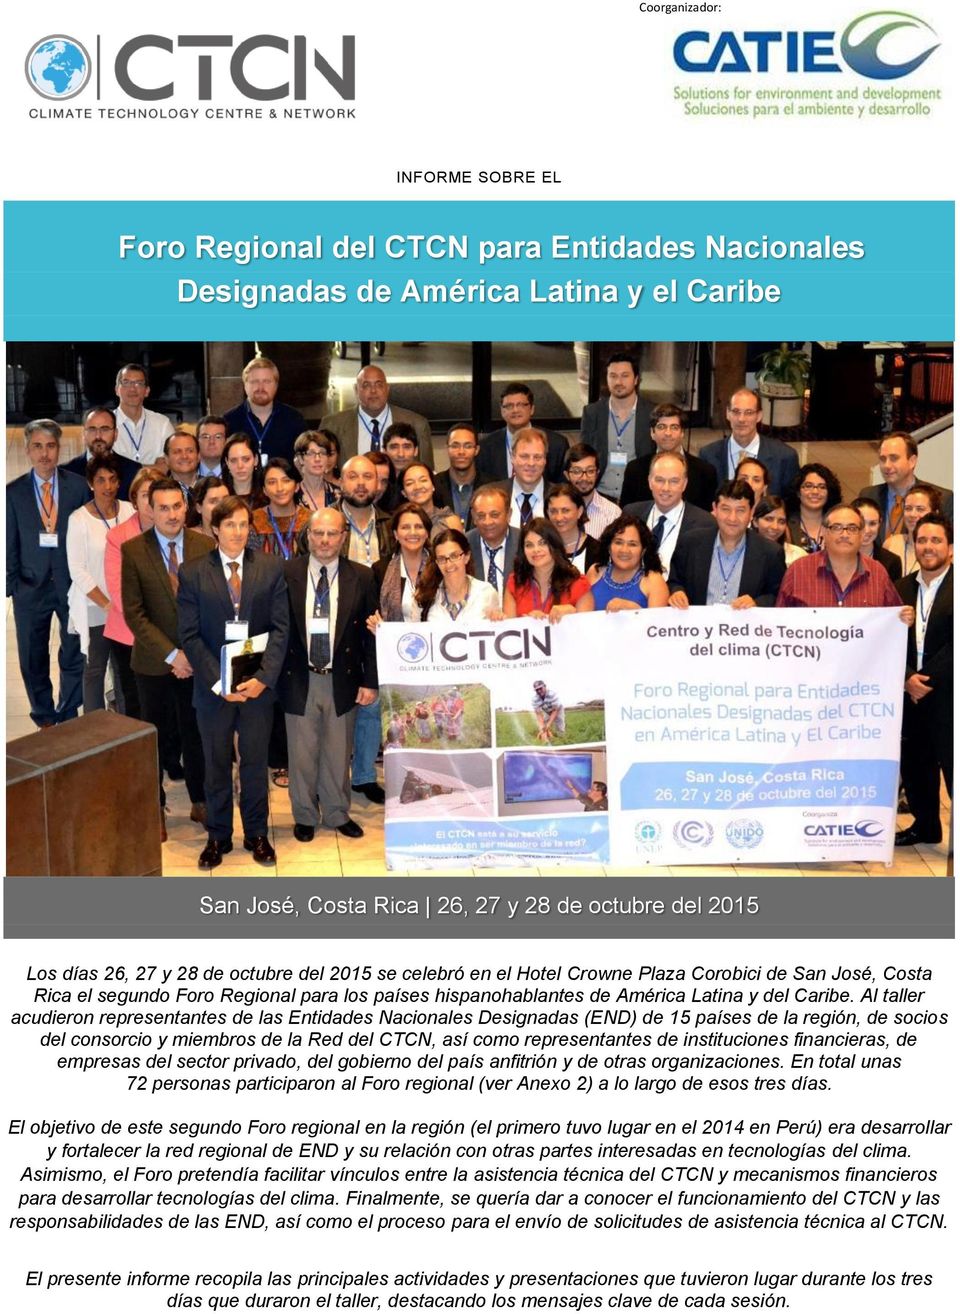 Al taller acudieron representantes de las Entidades Nacionales Designadas (END) de 15 países de la región, de socios del consorcio y miembros de la Red del CTCN, así como representantes de